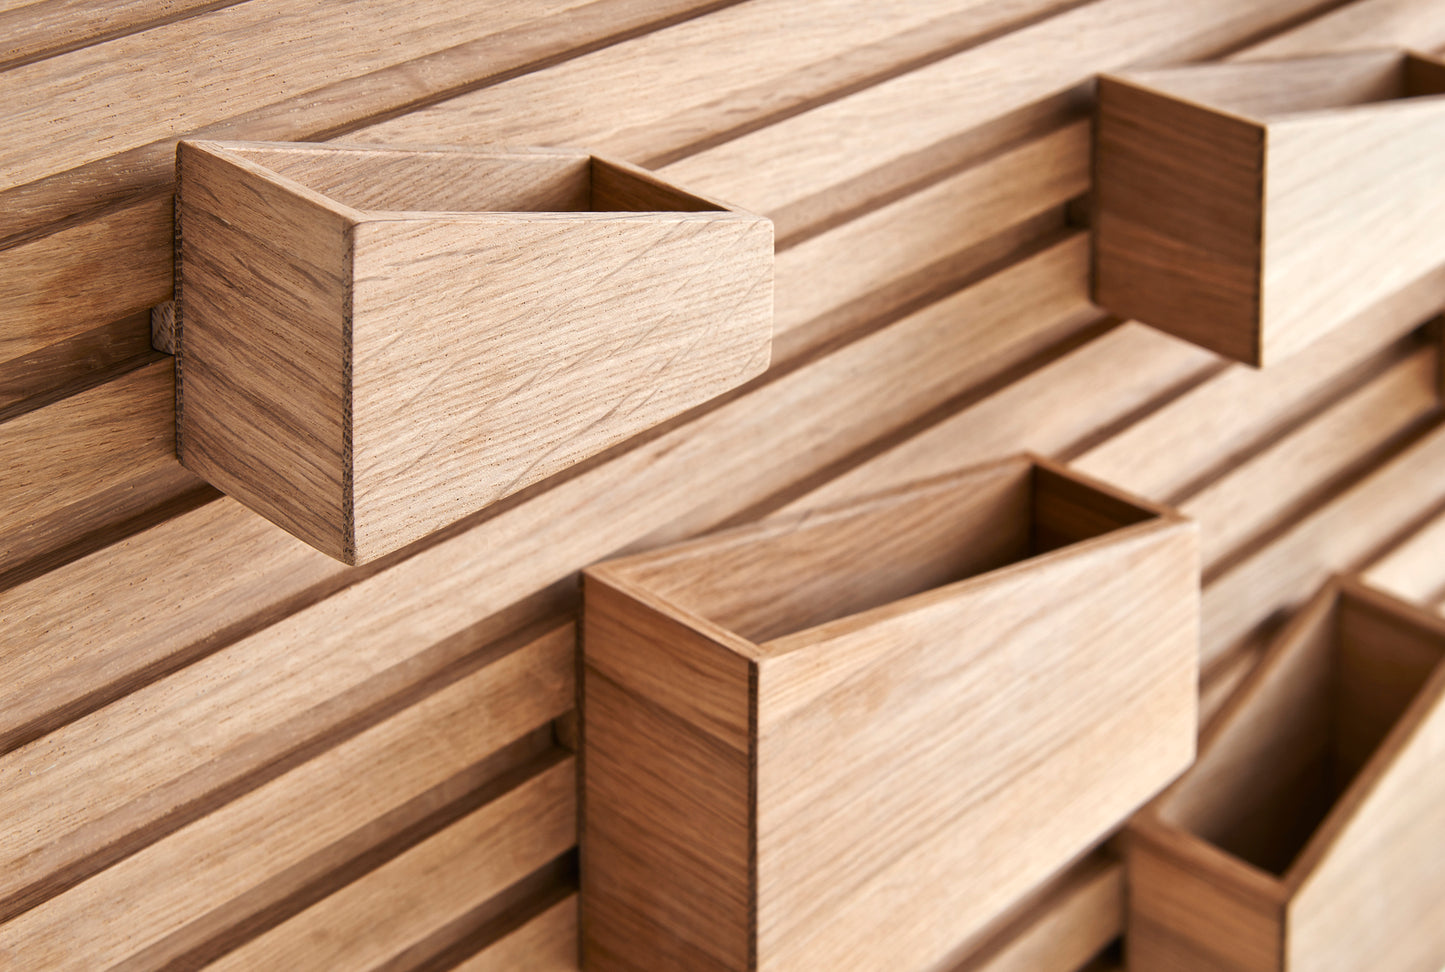 Holz-Organisationswand mit Boxen